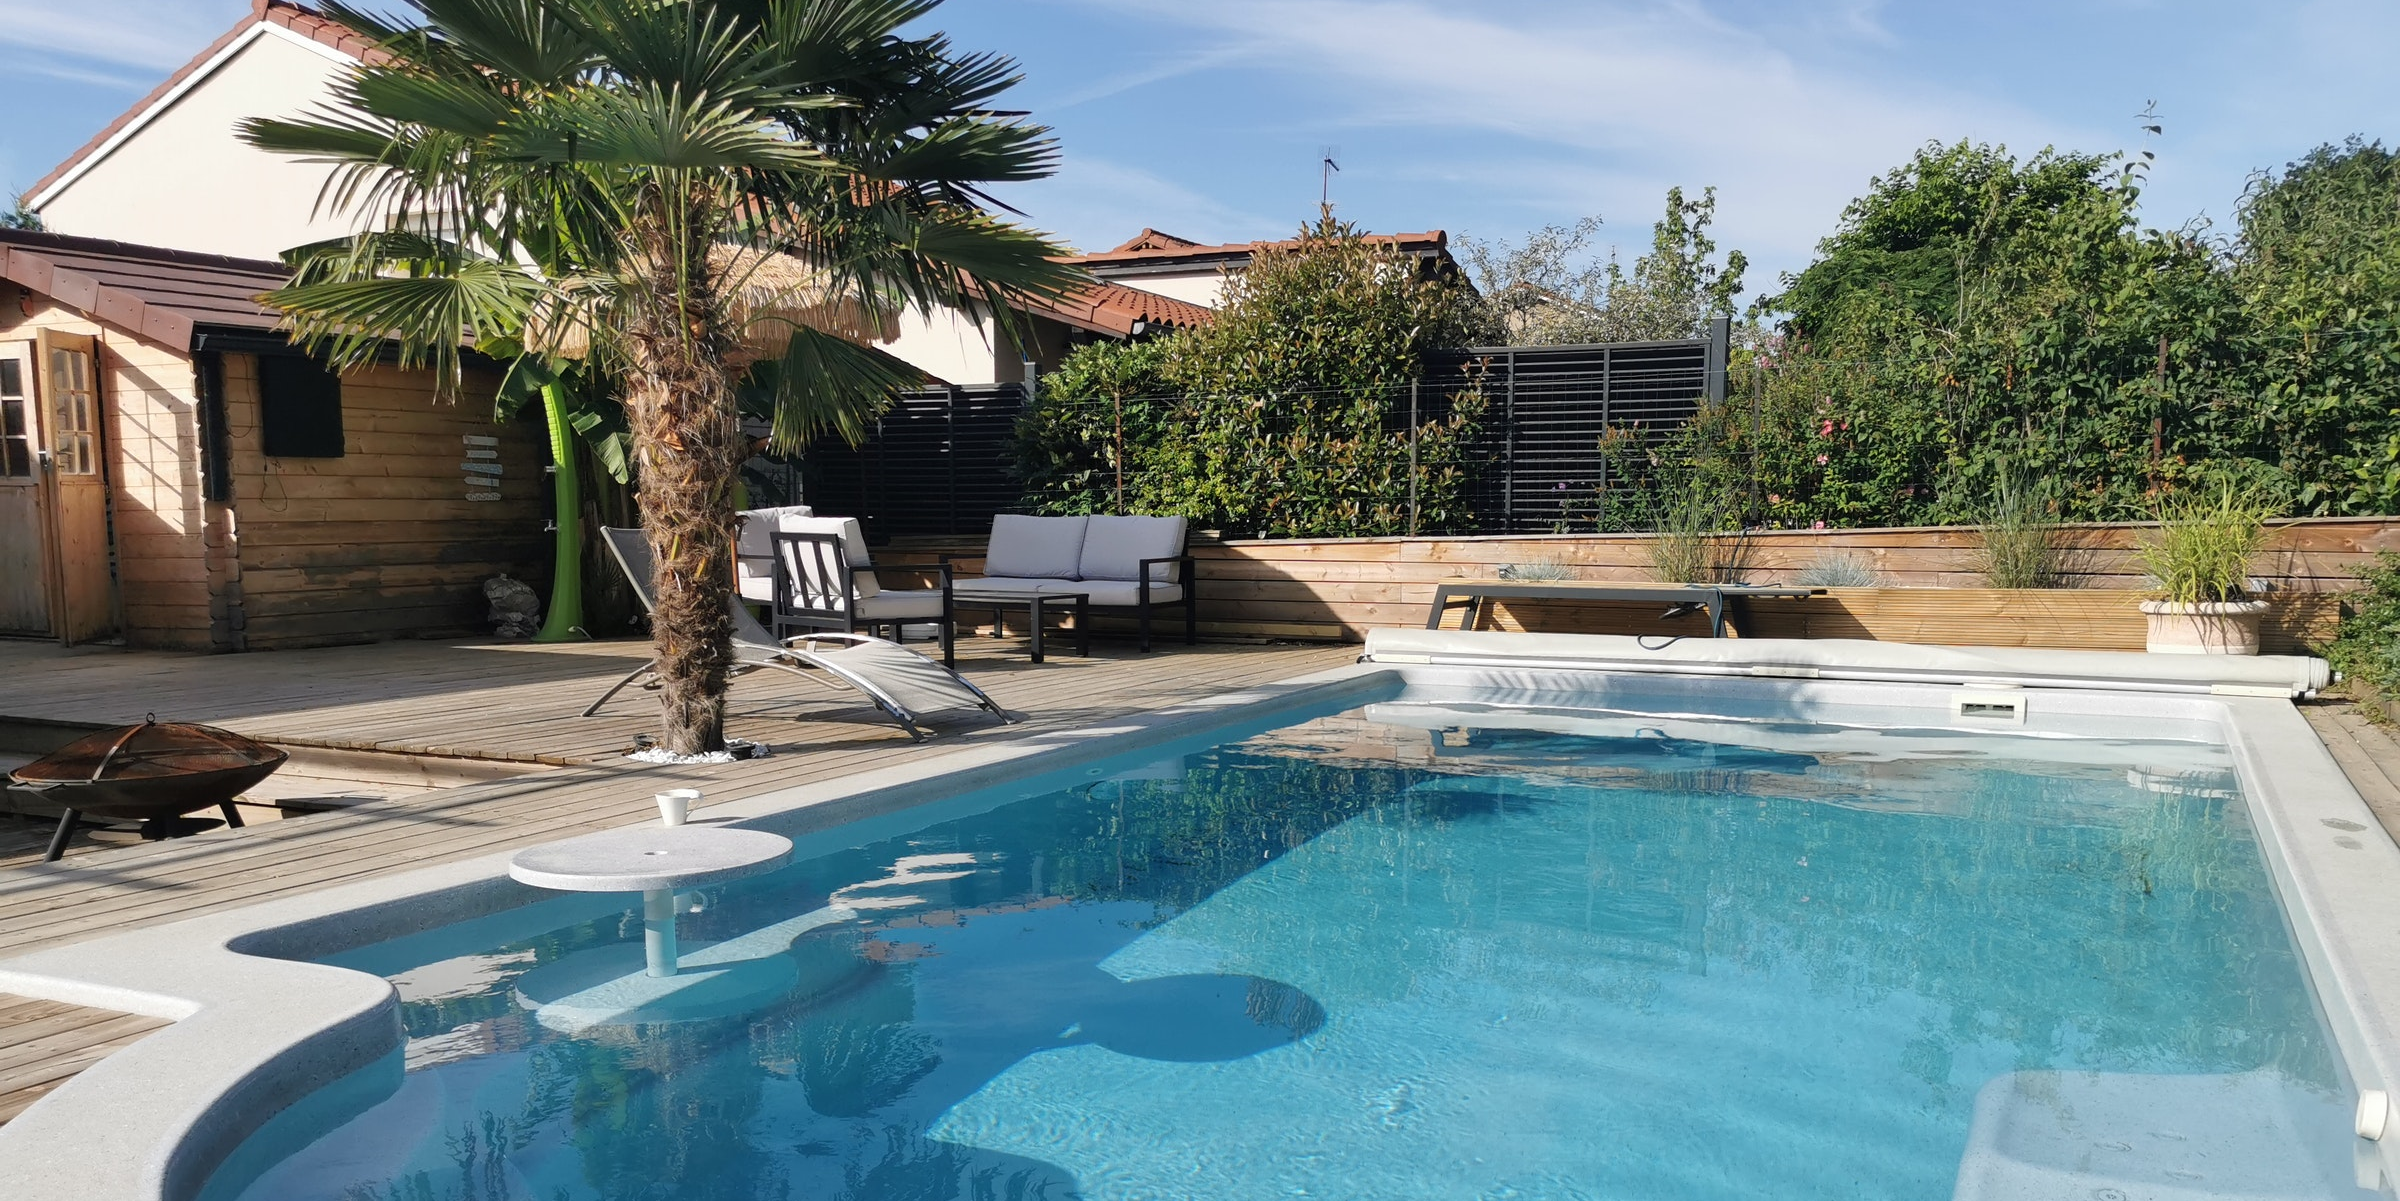 Loisirs outdoor : Swimmy se rêve en nouveau Airbnb de la location de piscines